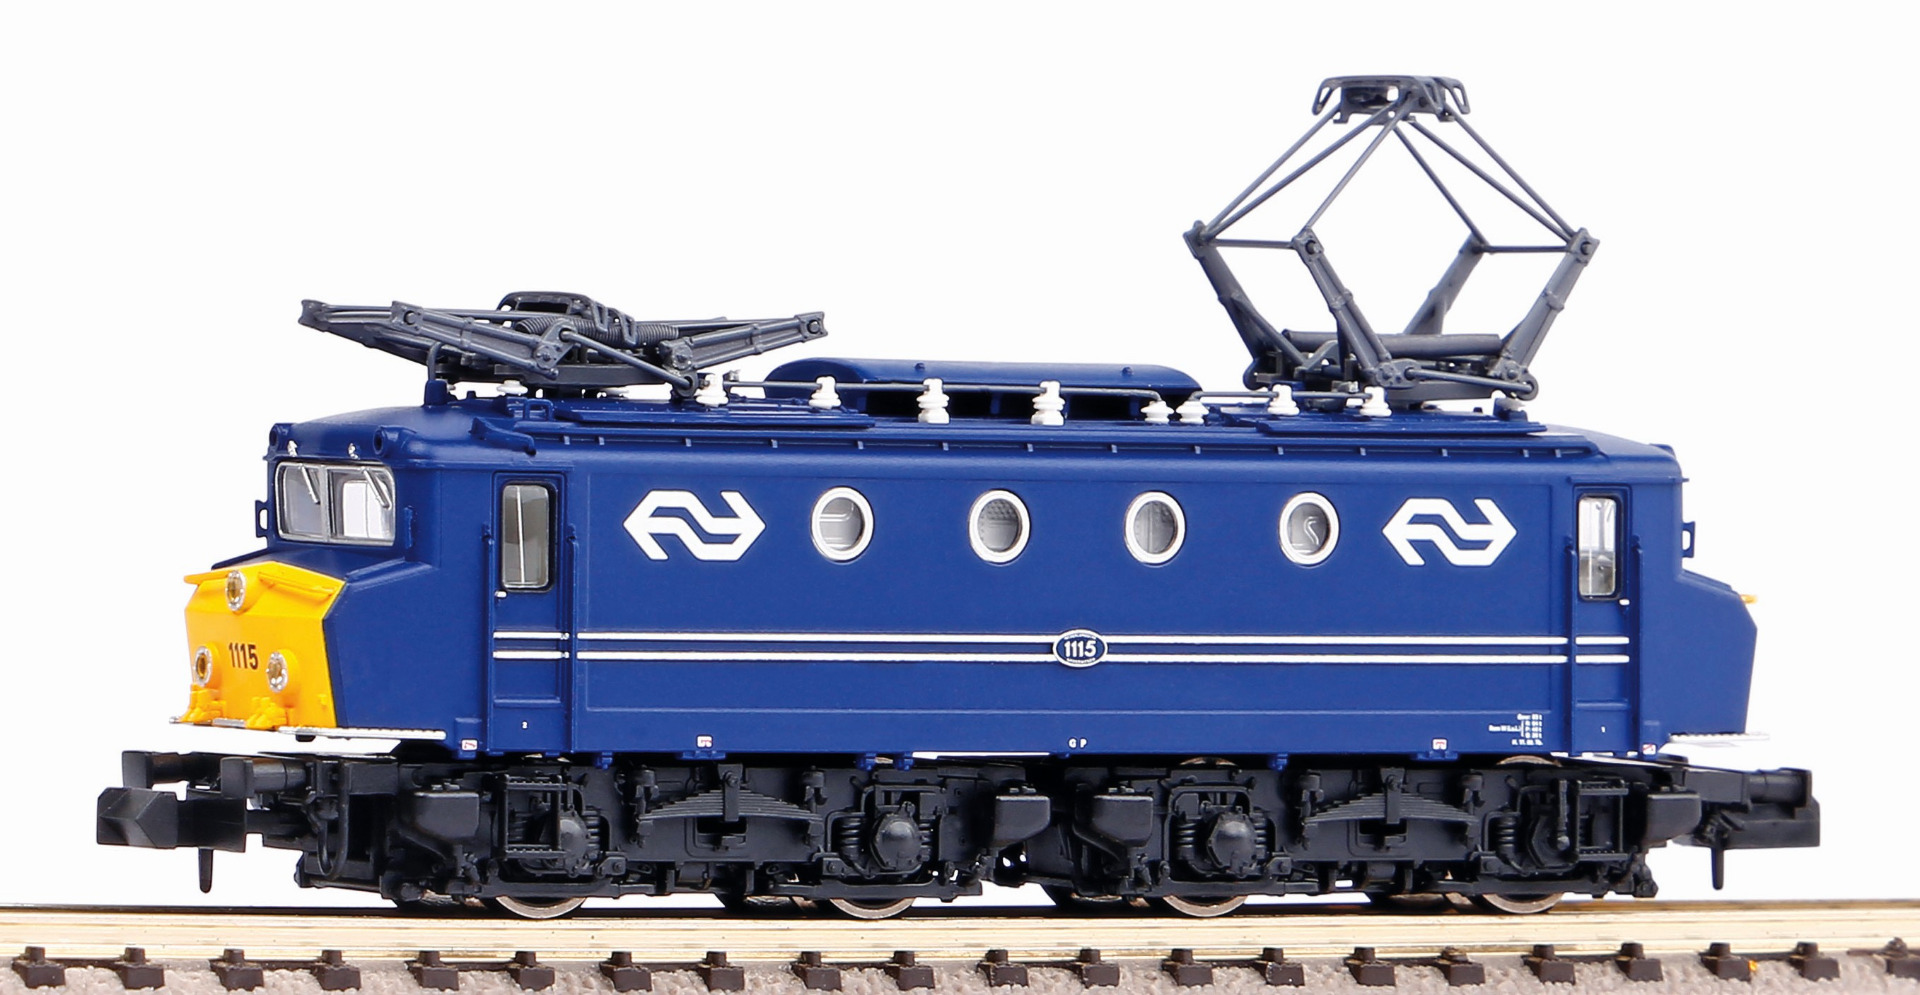 Piko 40372 N NS elektrische locomotief 1115, blauw met voorzetneus